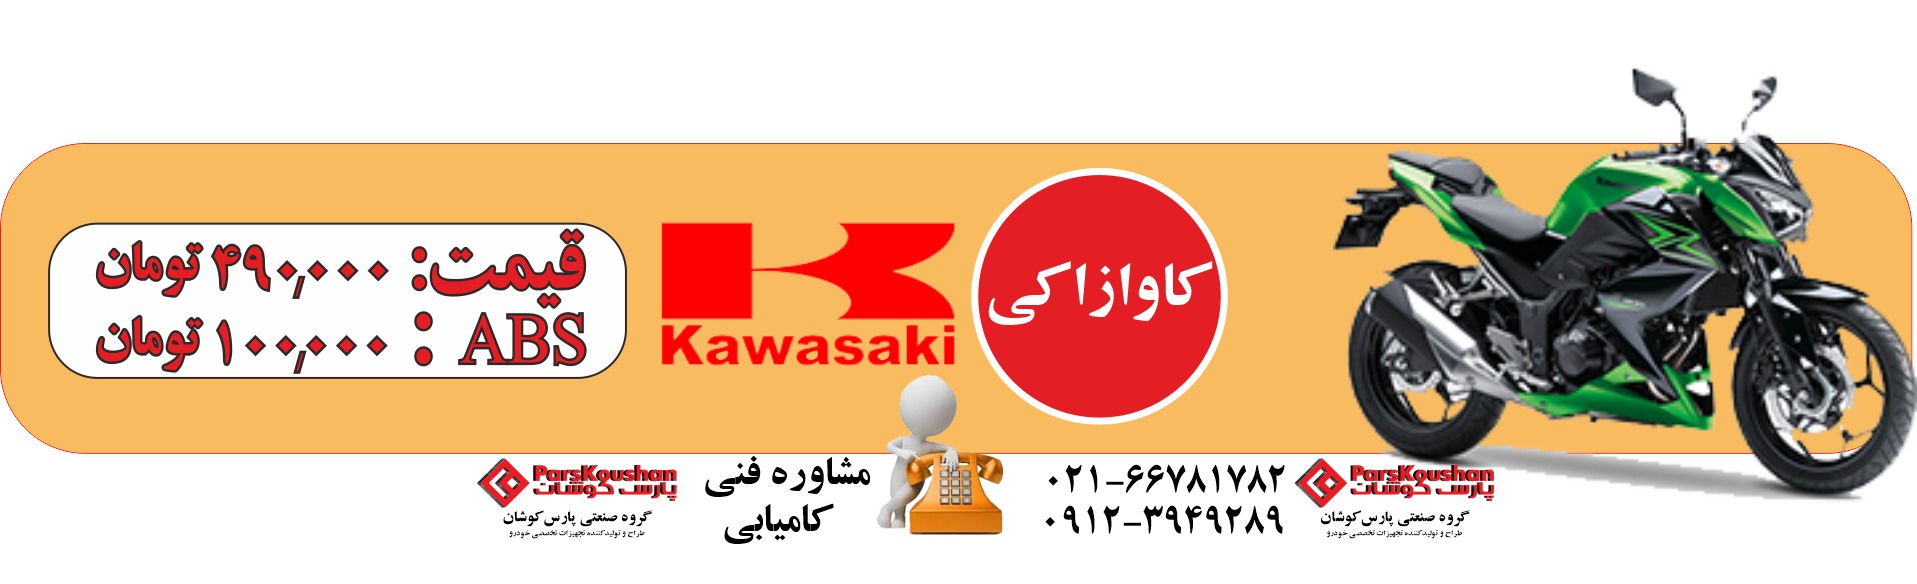 kawasaki 1